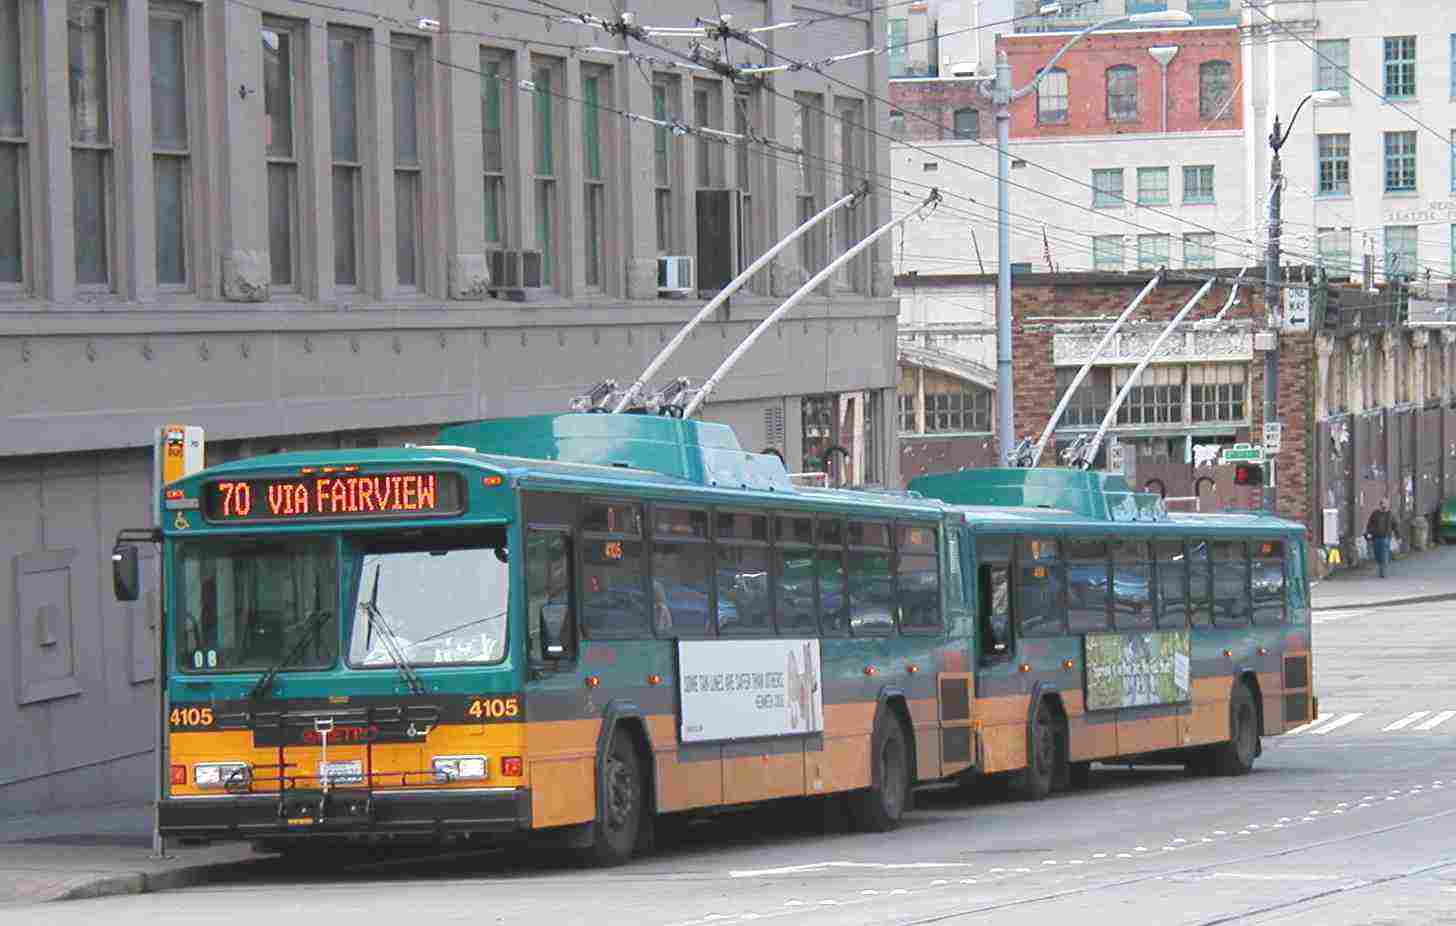 Gillig Trolley Bus